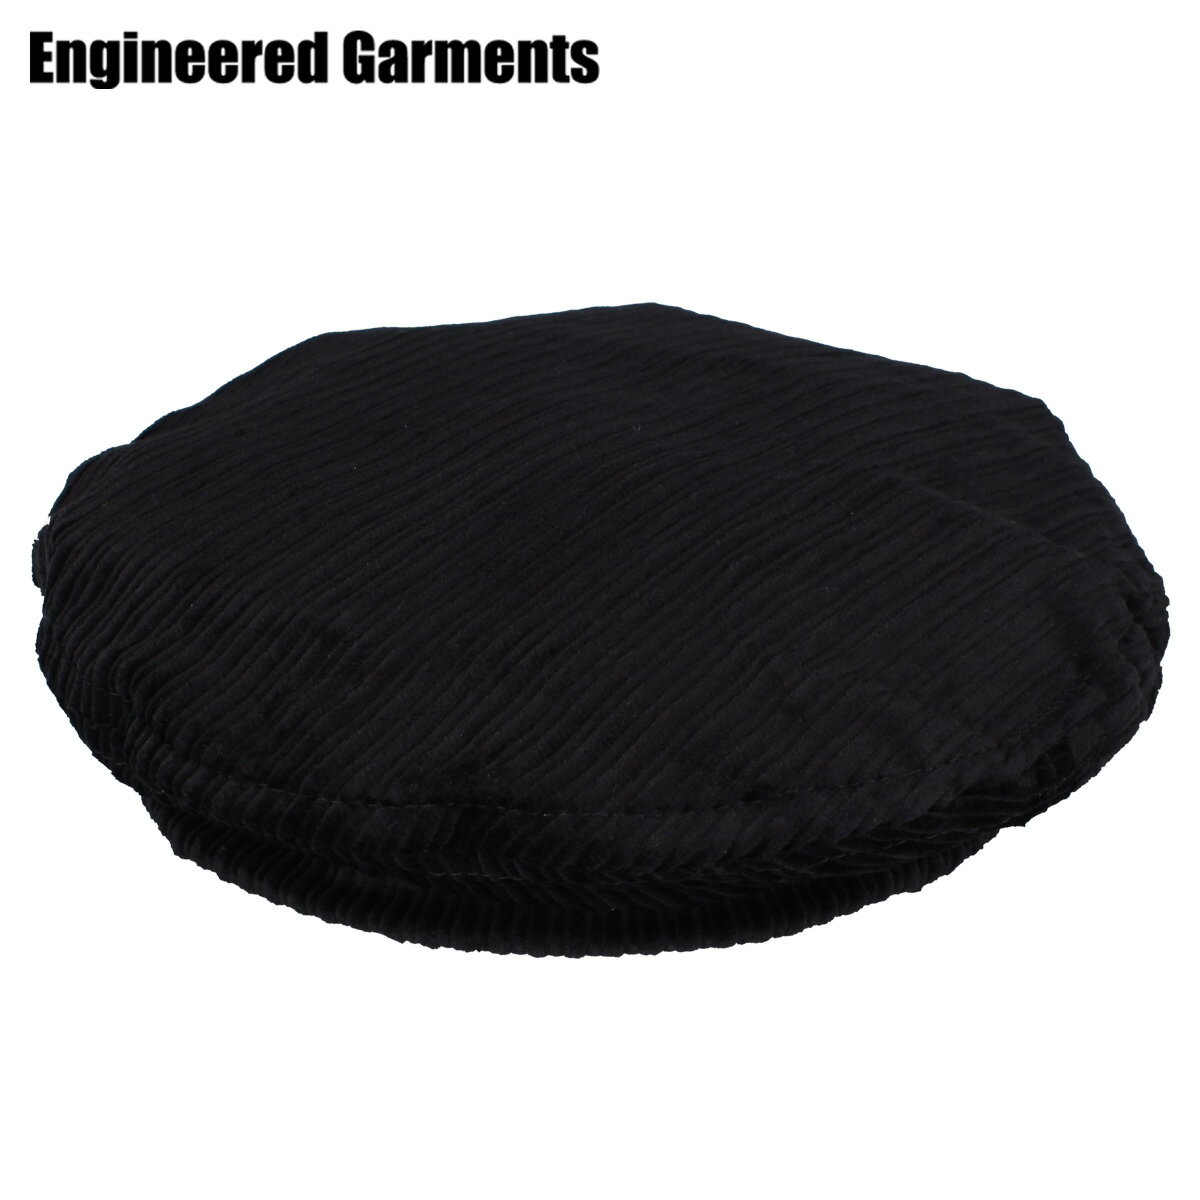 【最大1000円OFFクーポン】 ENGINEERED GARMENTS エンジニアド ガーメンツ ハット 帽子 ベレー帽 メンズ レディース BERET HI-LO CORDUROY ブラック 黒 20F1H005